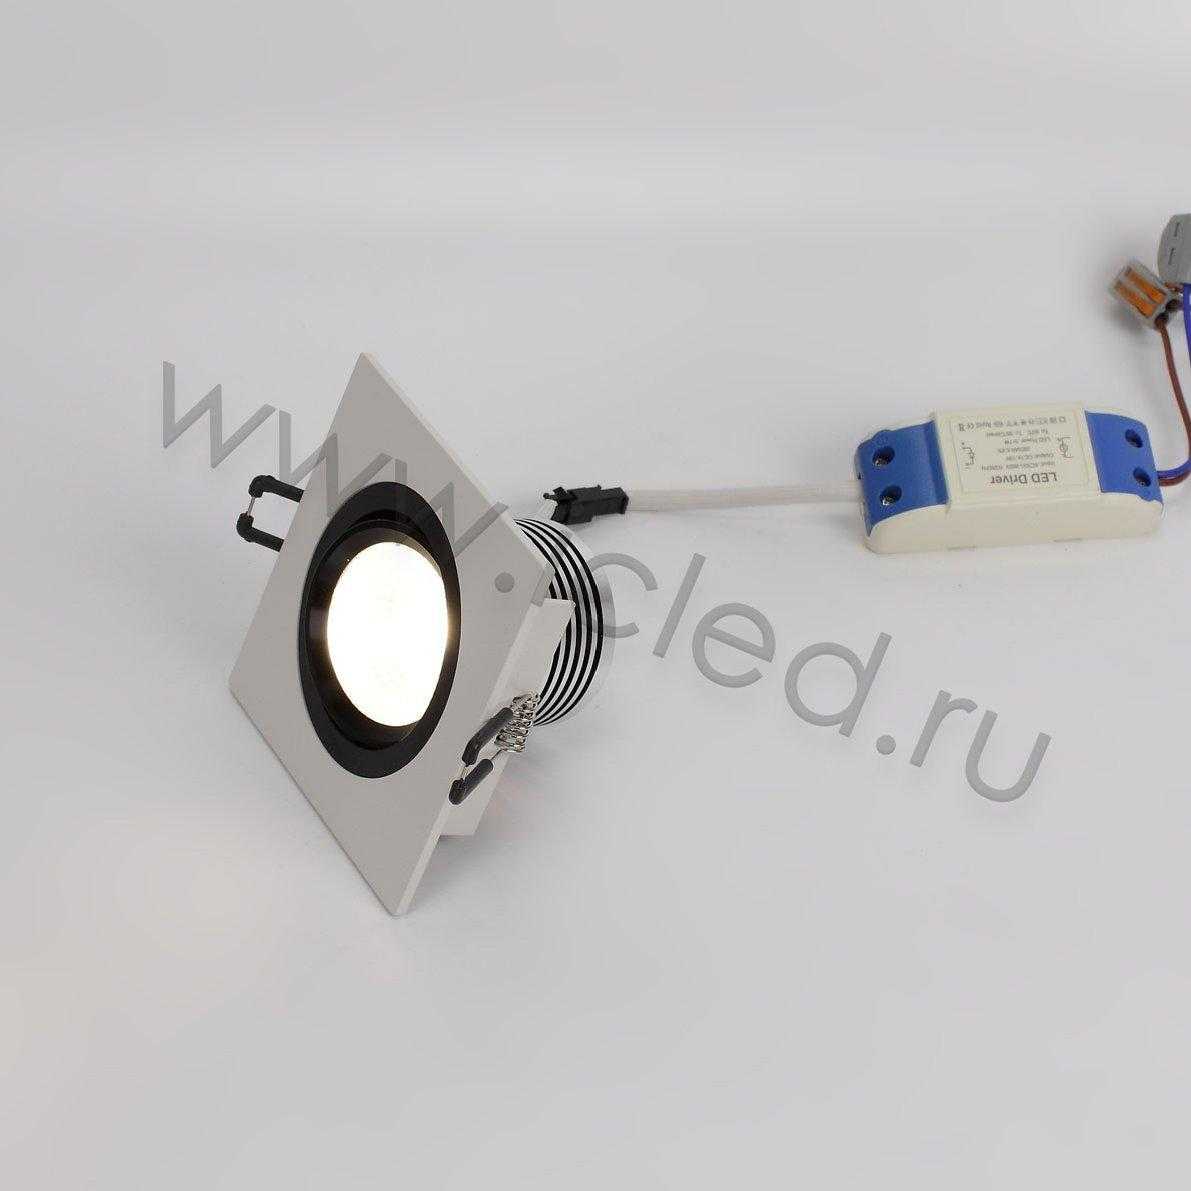 Светодиодные светильники Светодиодный светильник встраиваемый 99-1 head Nest Series White Square (5W,Day White)